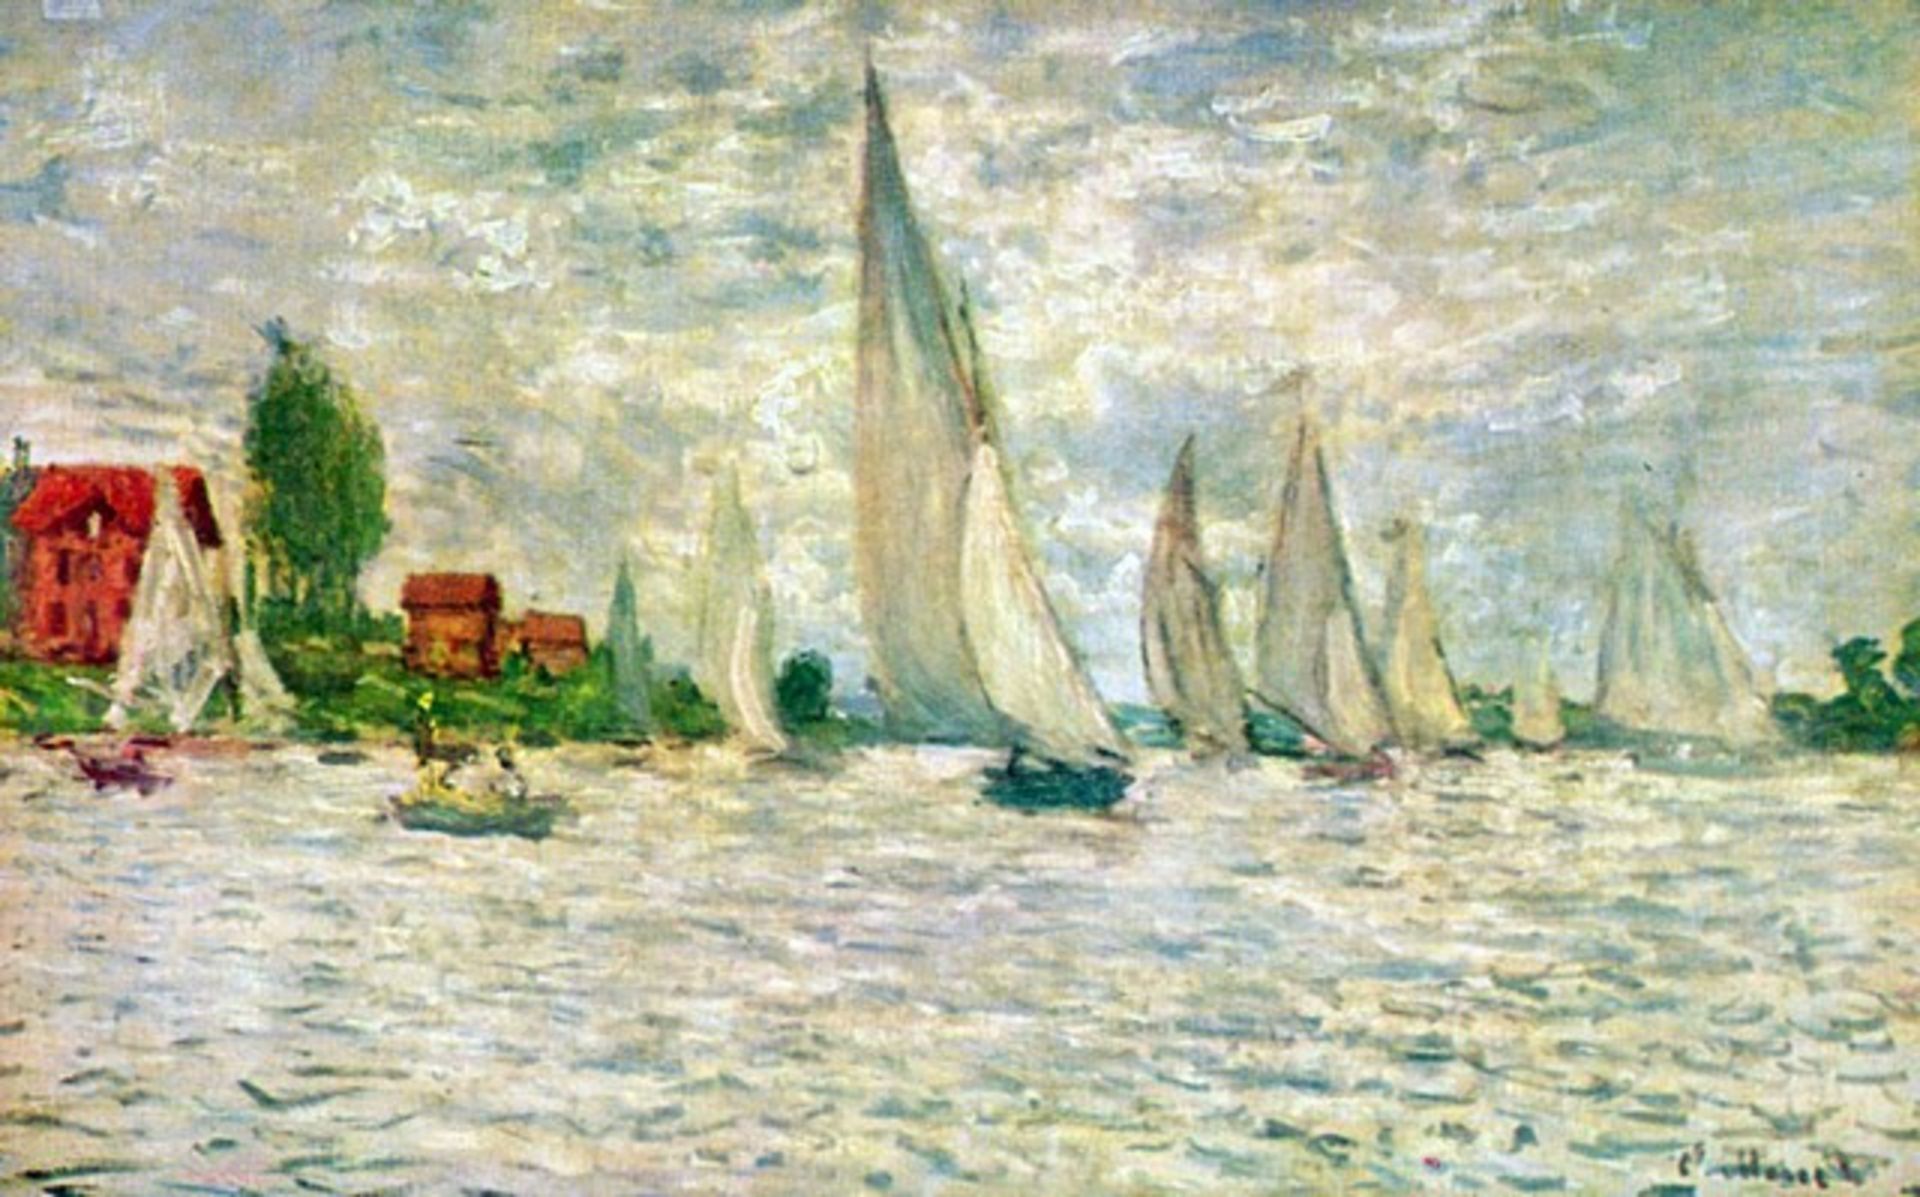 Claude Monet - Sailboats, Regatta in Argenteuil